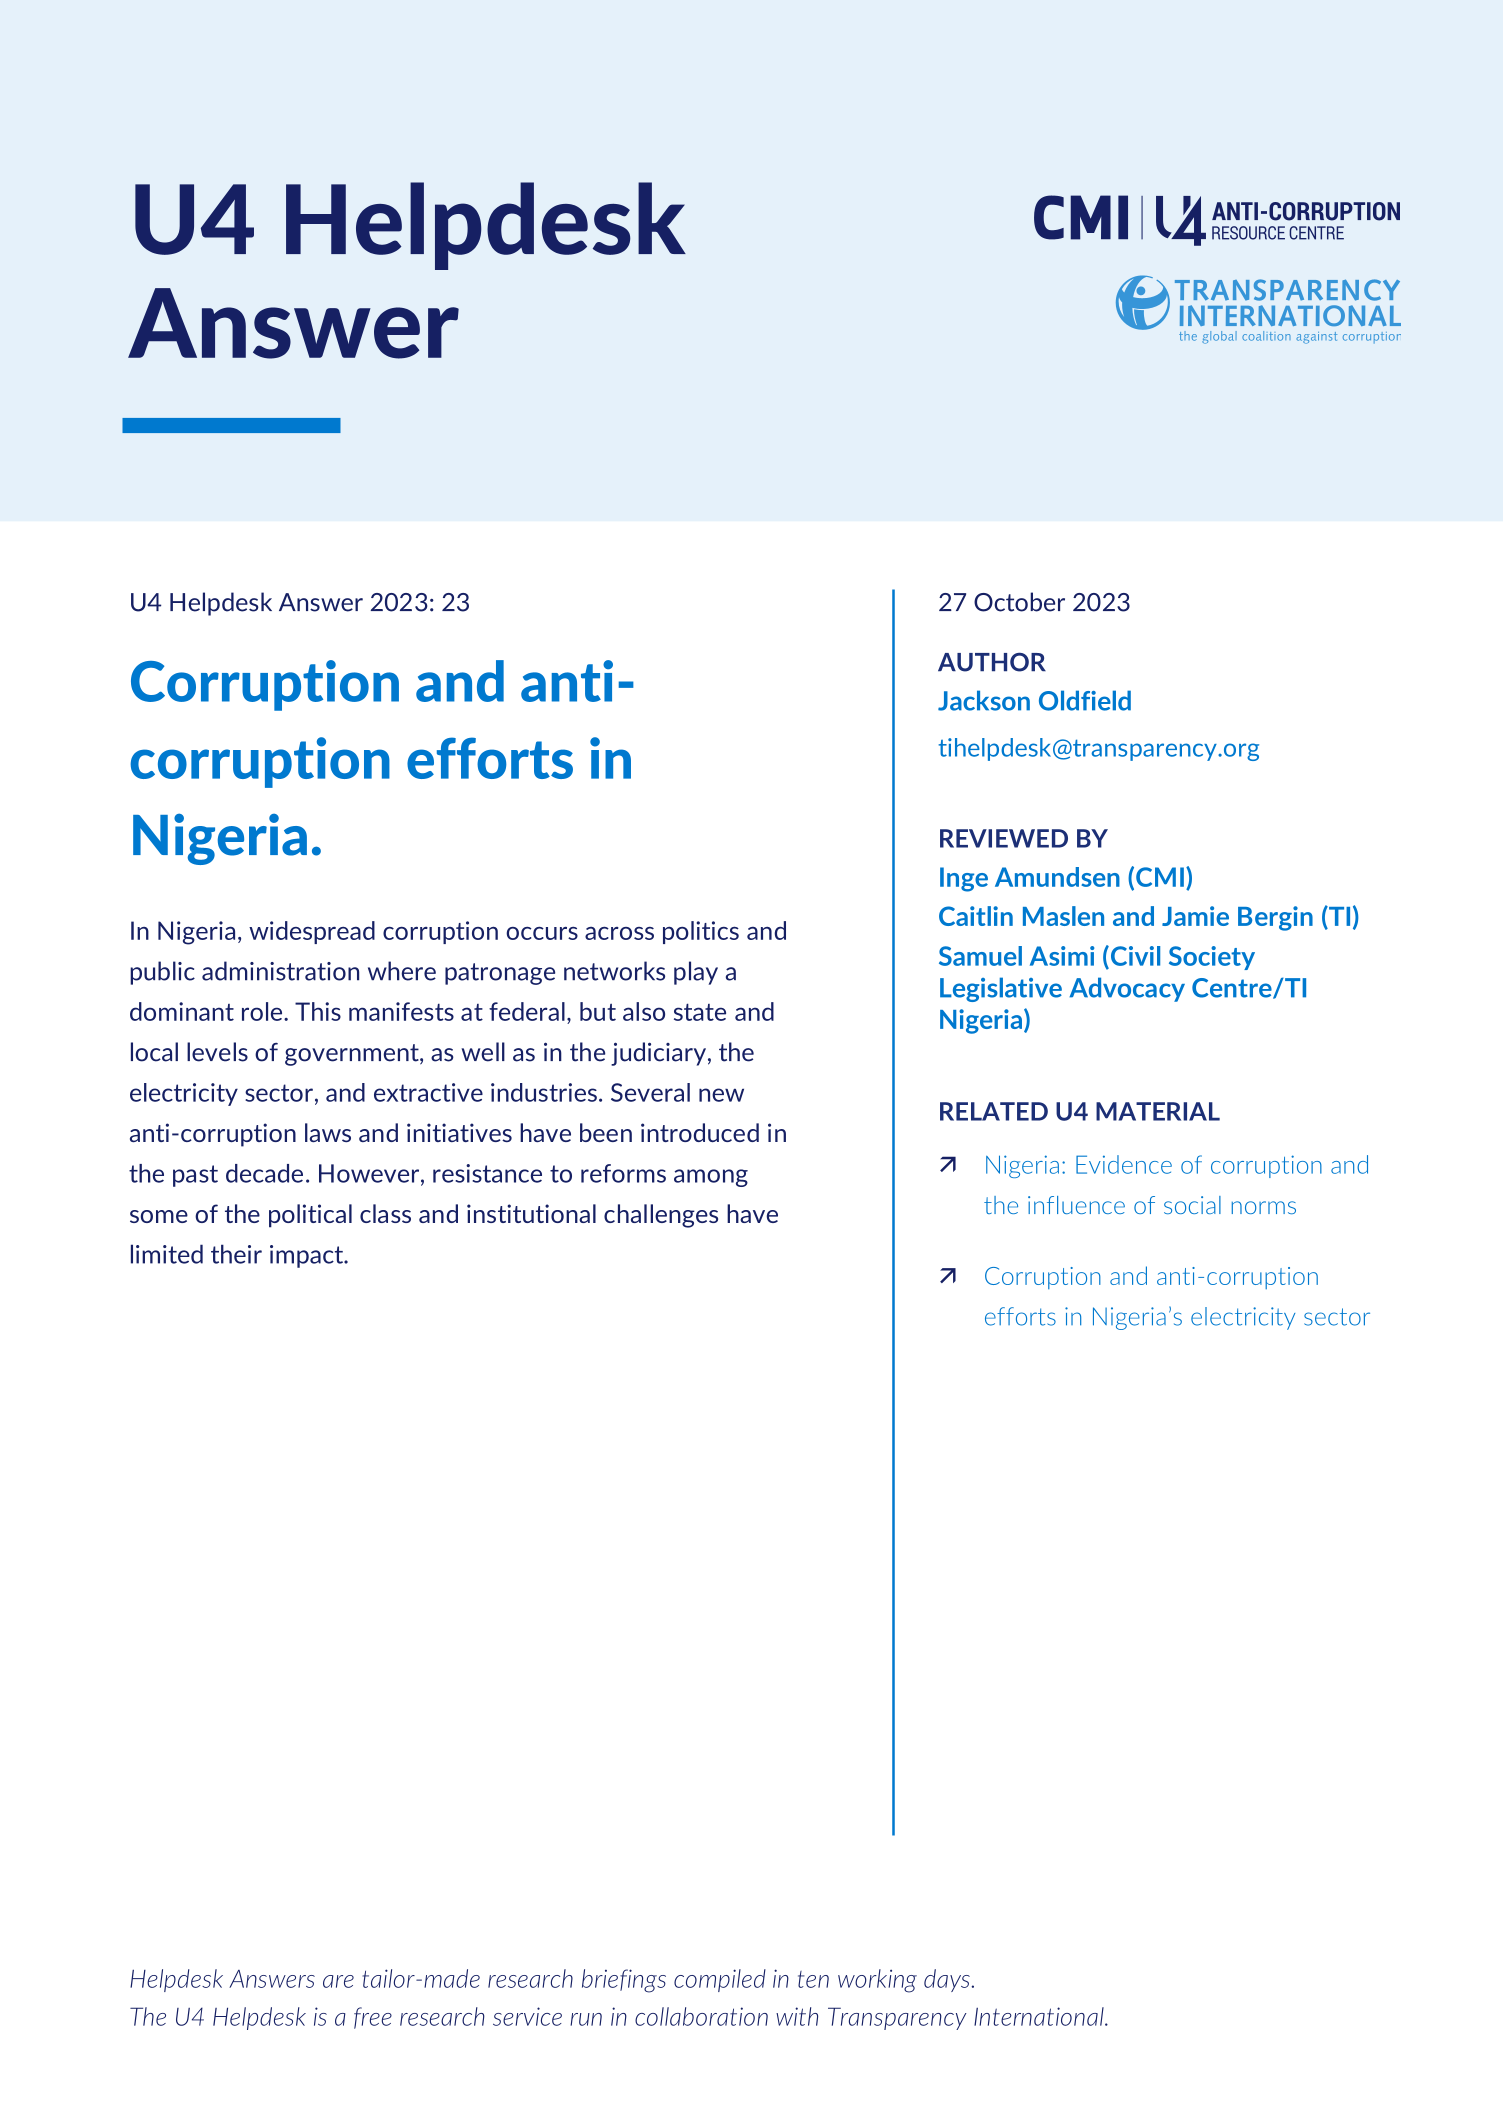 Nigeria: Corruption and anti-corruption